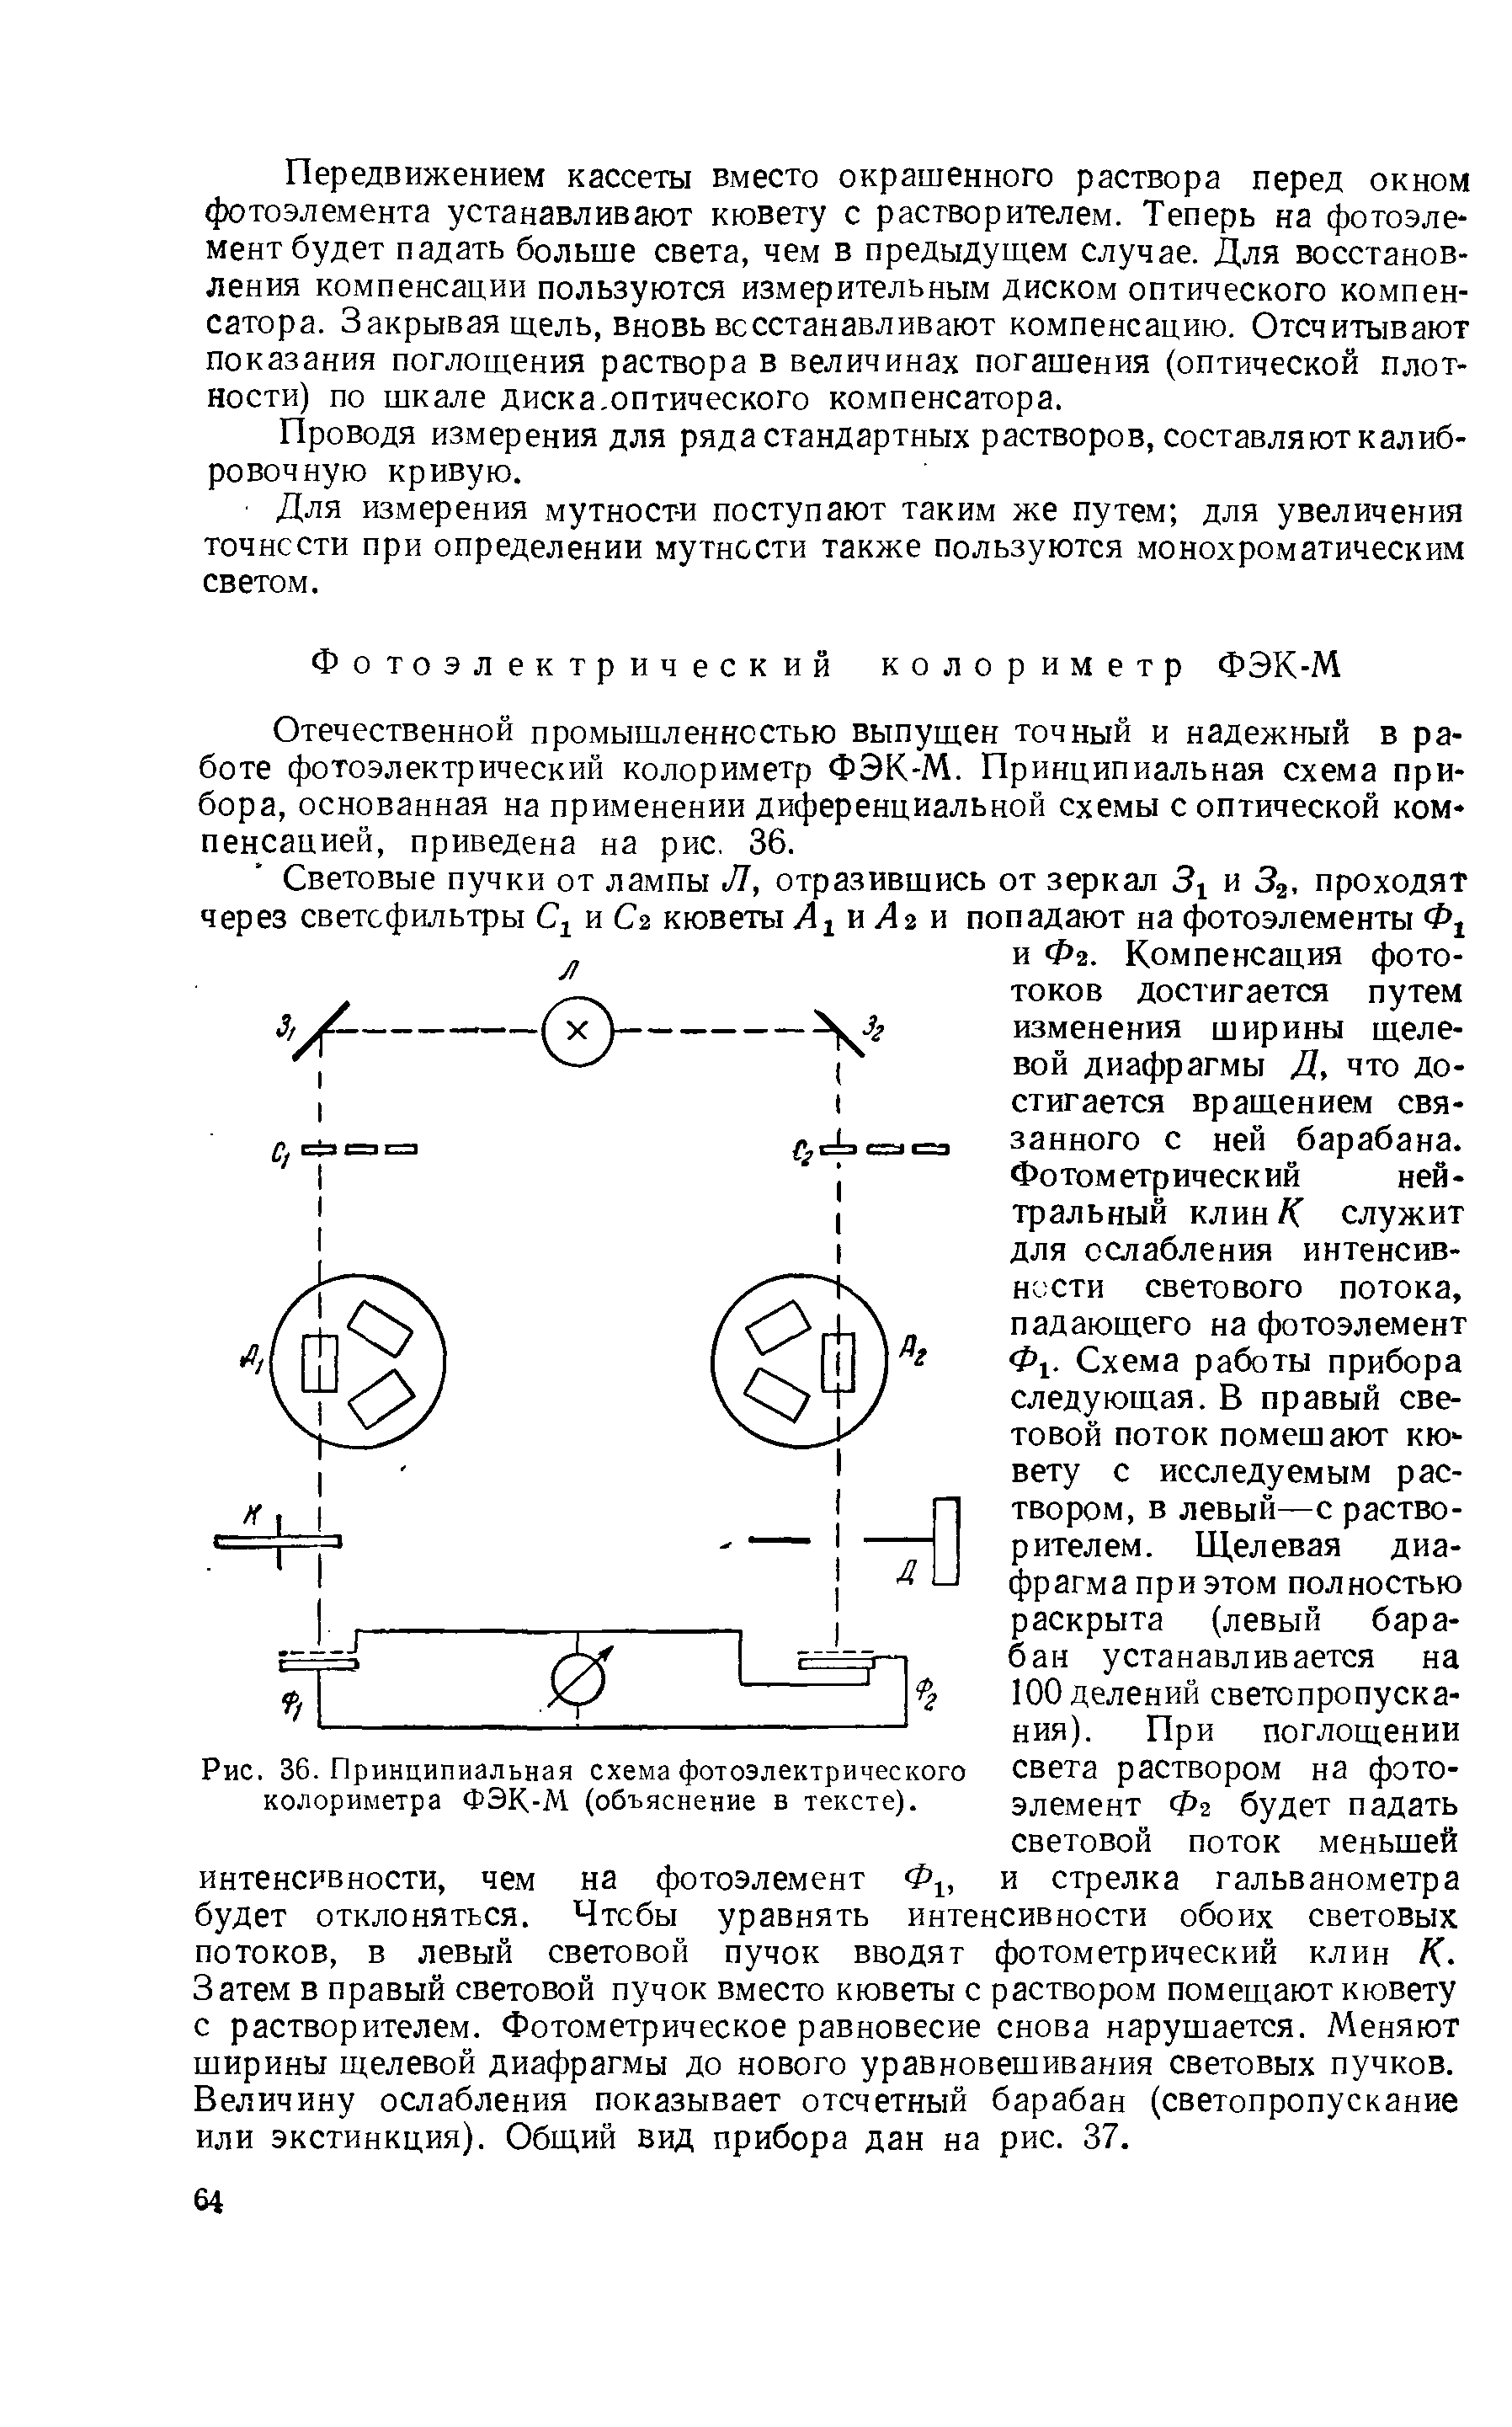 Рис. 36. Принципиальная схема фотоэлектрического колориметра ФЭК-М (объяснение в тексте).